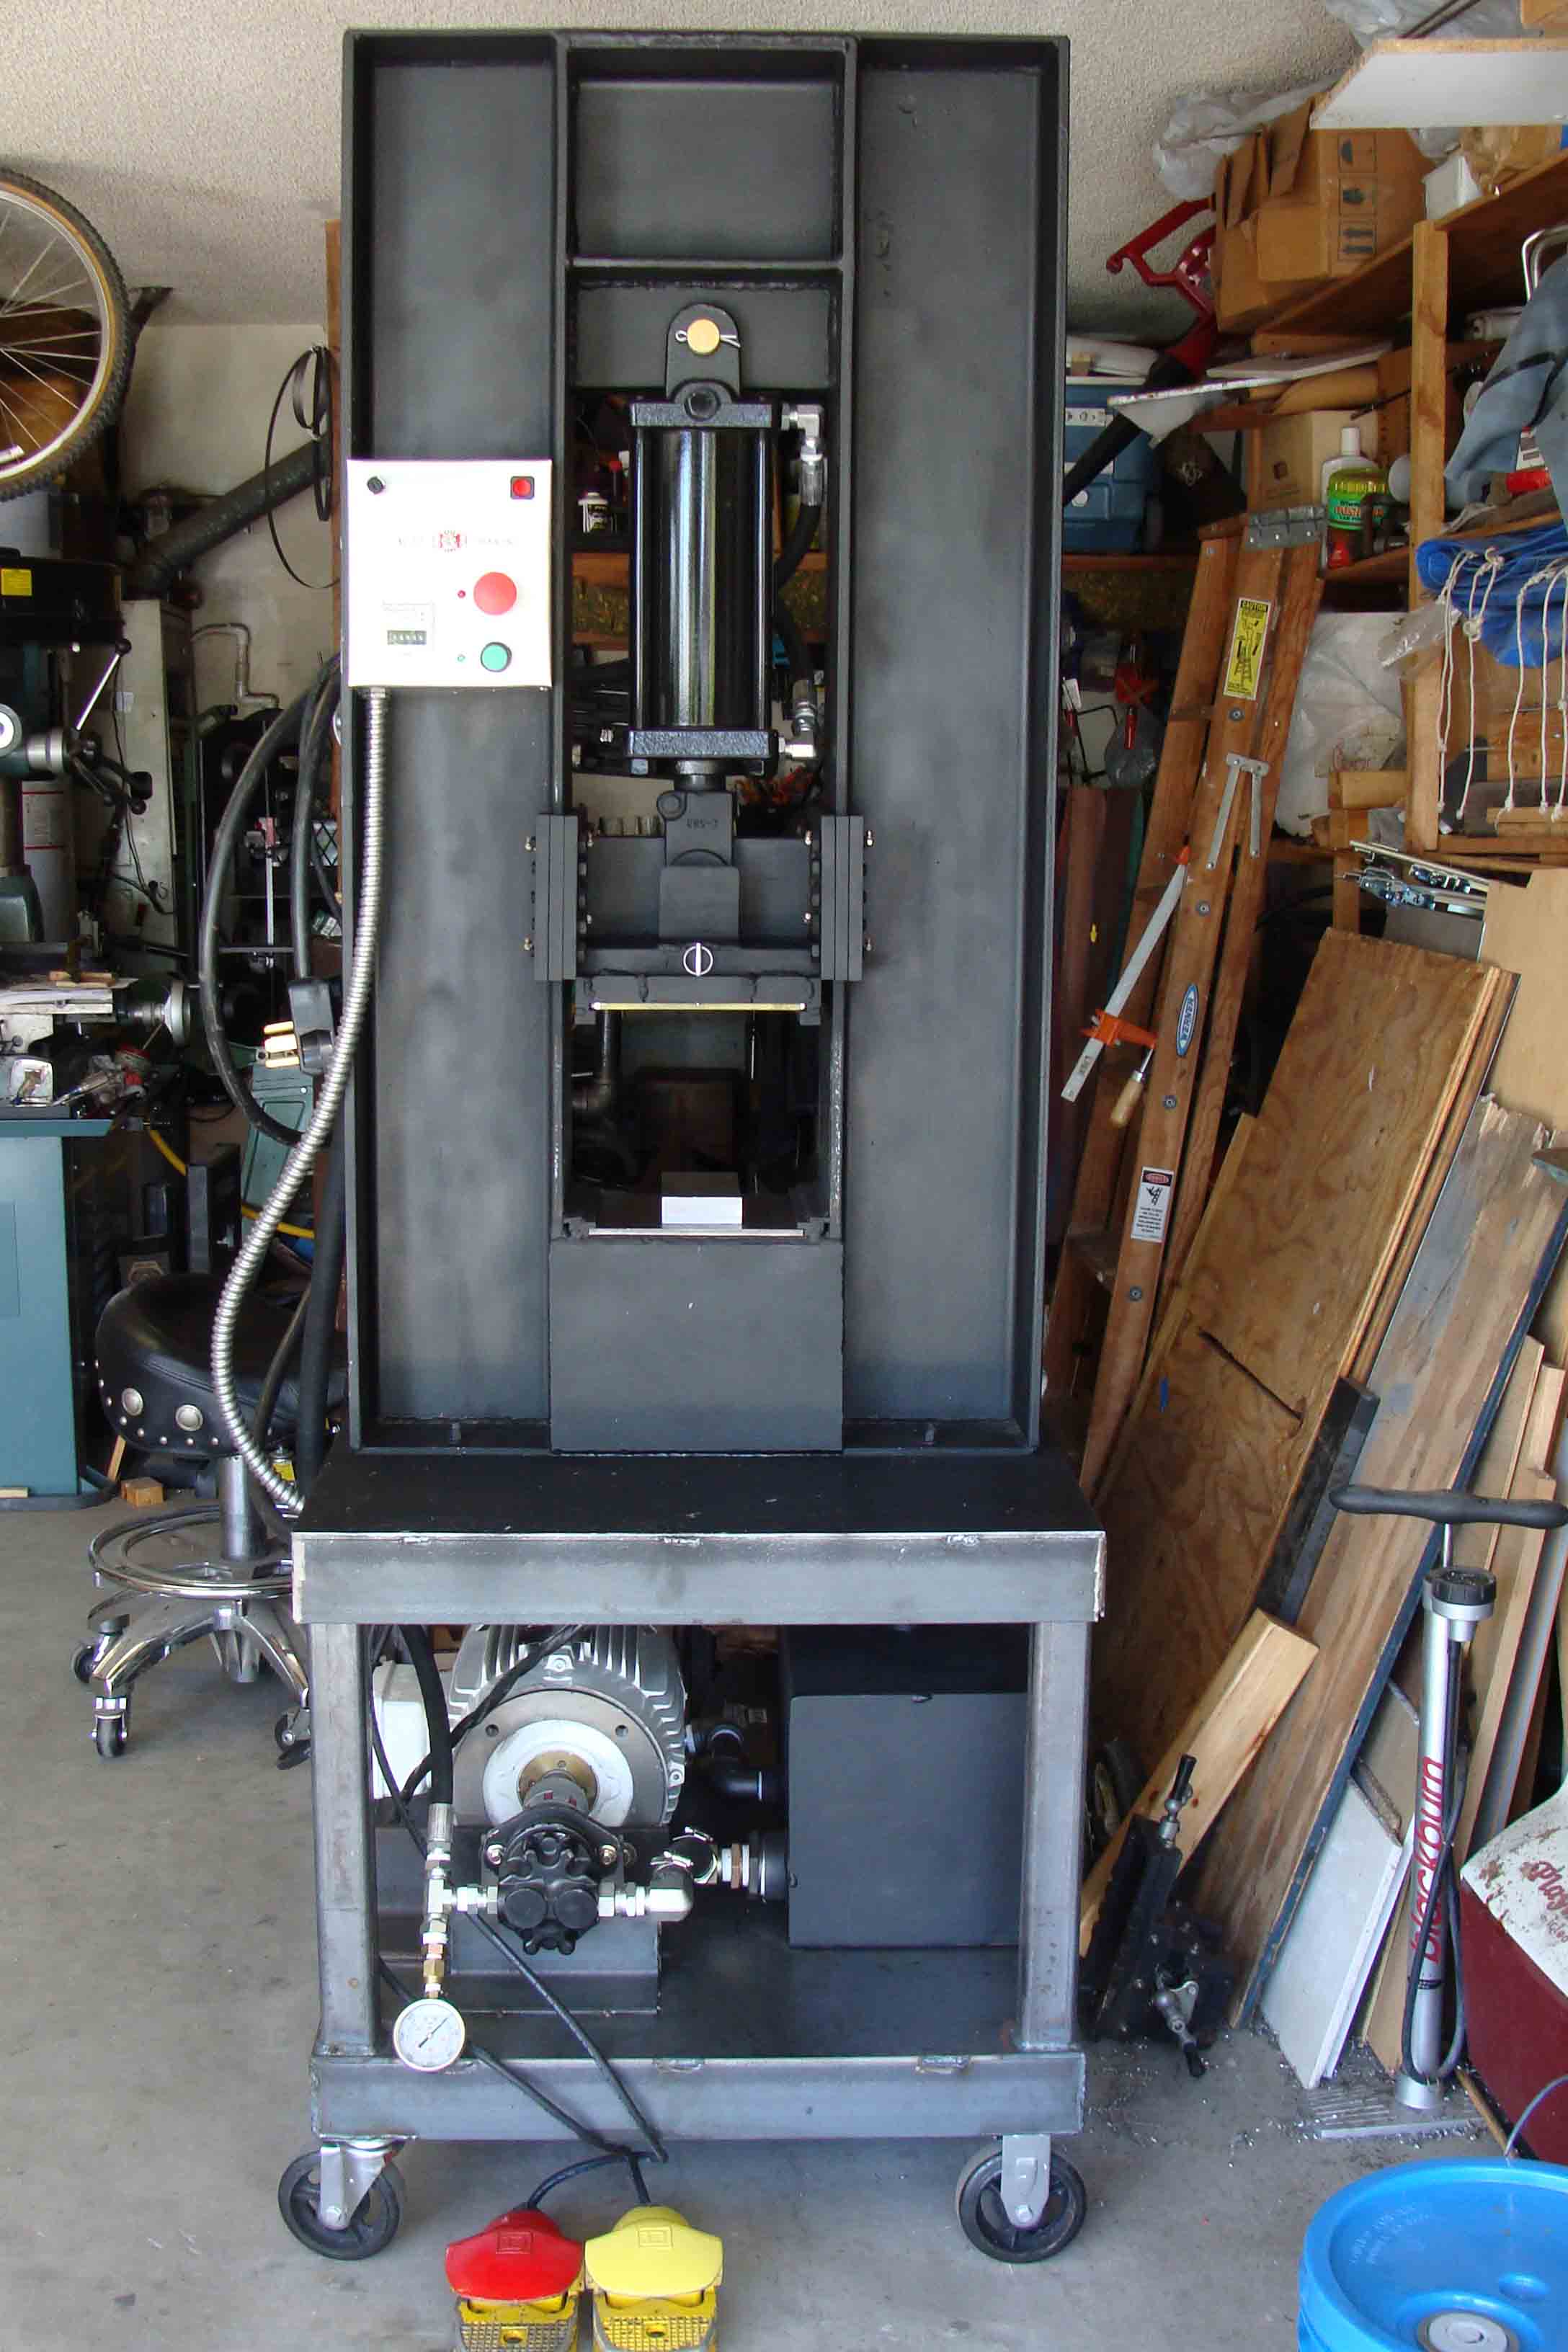 hydraulic forging press plans